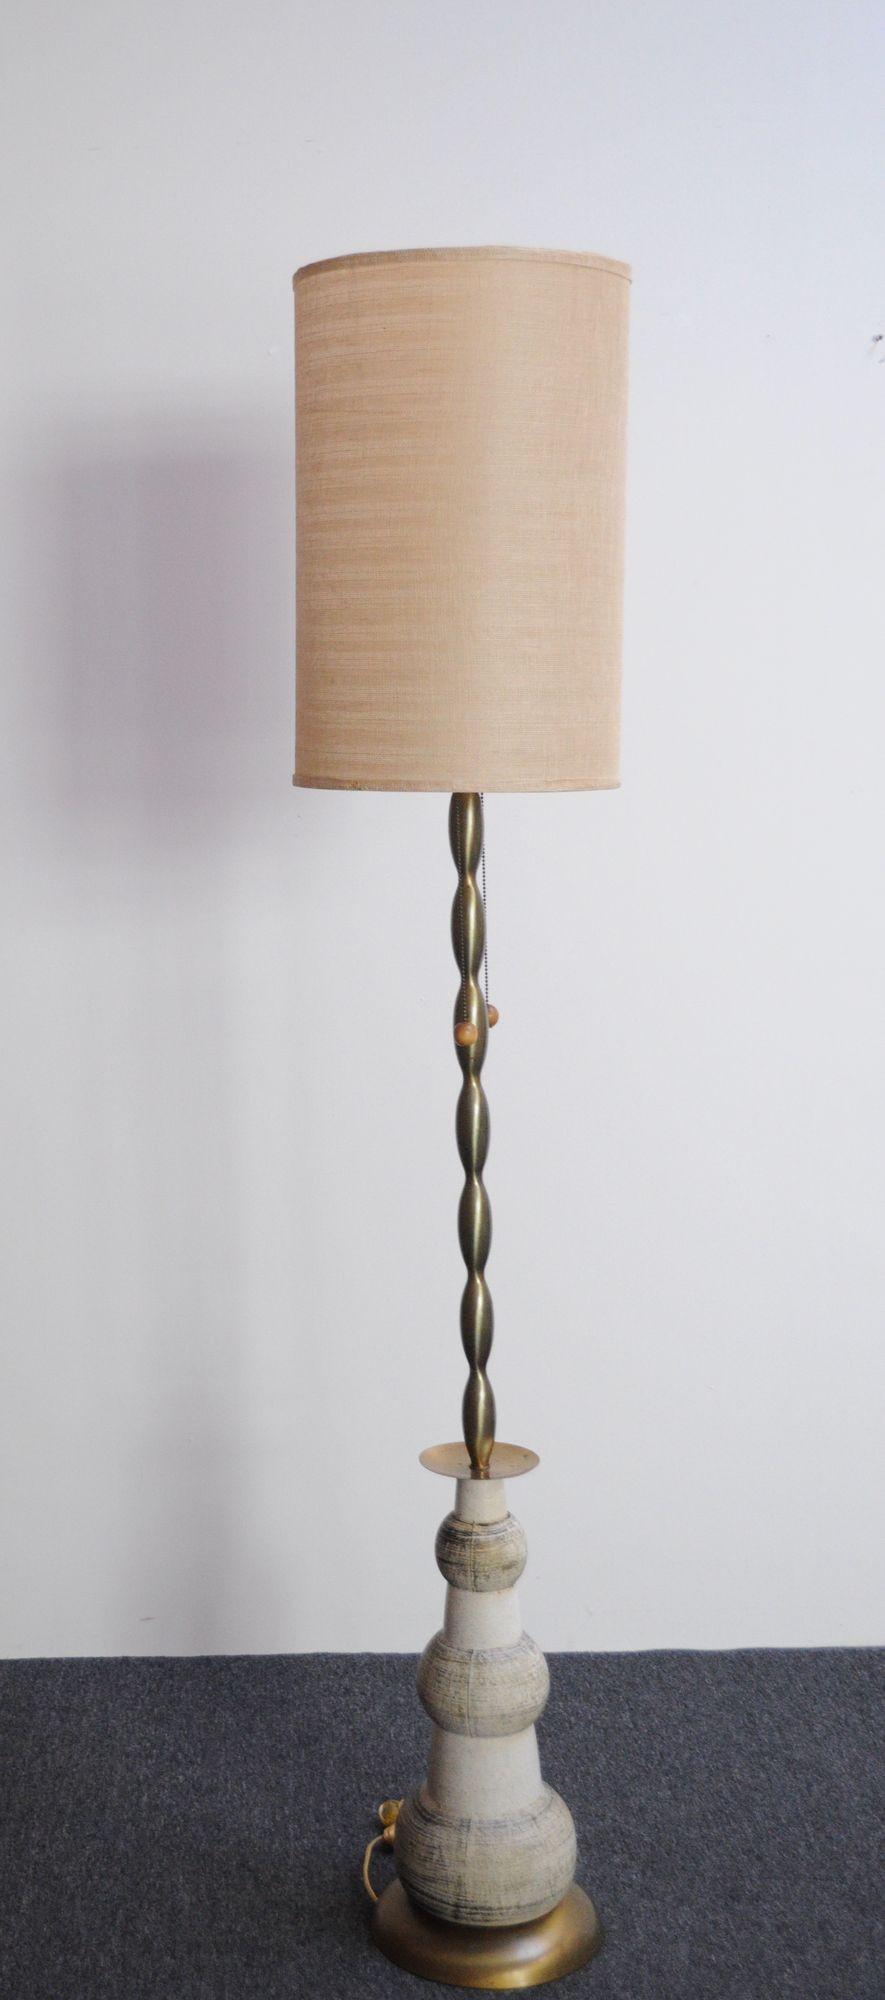 Glamouröse und einzigartige Stehlampe im Hollywood-Regency-Stil (ca. 1960er Jahre, USA).
Die Leuchte besteht aus einem Sockel mit einer abgestuften Keramikkugel, die einen skulpturalen Schaft aus Messing mit doppeltem Sockel, einem Ring und einer